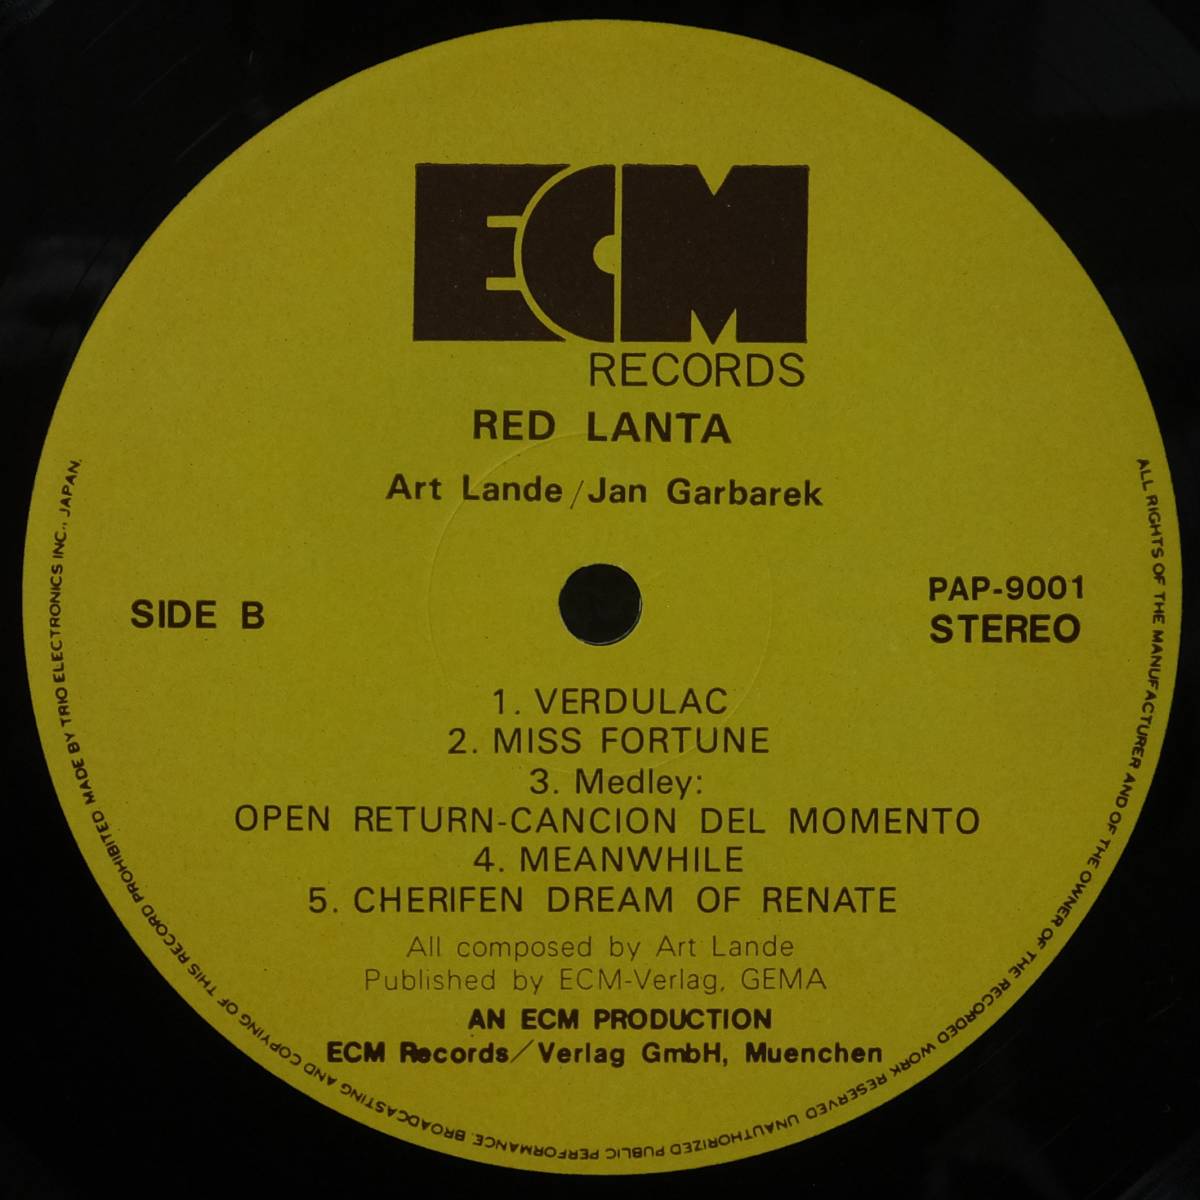 帯付 LPレコード RED LANTA レッド・ランタ ART LANDE アート・ランディ JAN GARBAREK ヤン・ガルバレク PAP-9001 ECM トリオ_画像5